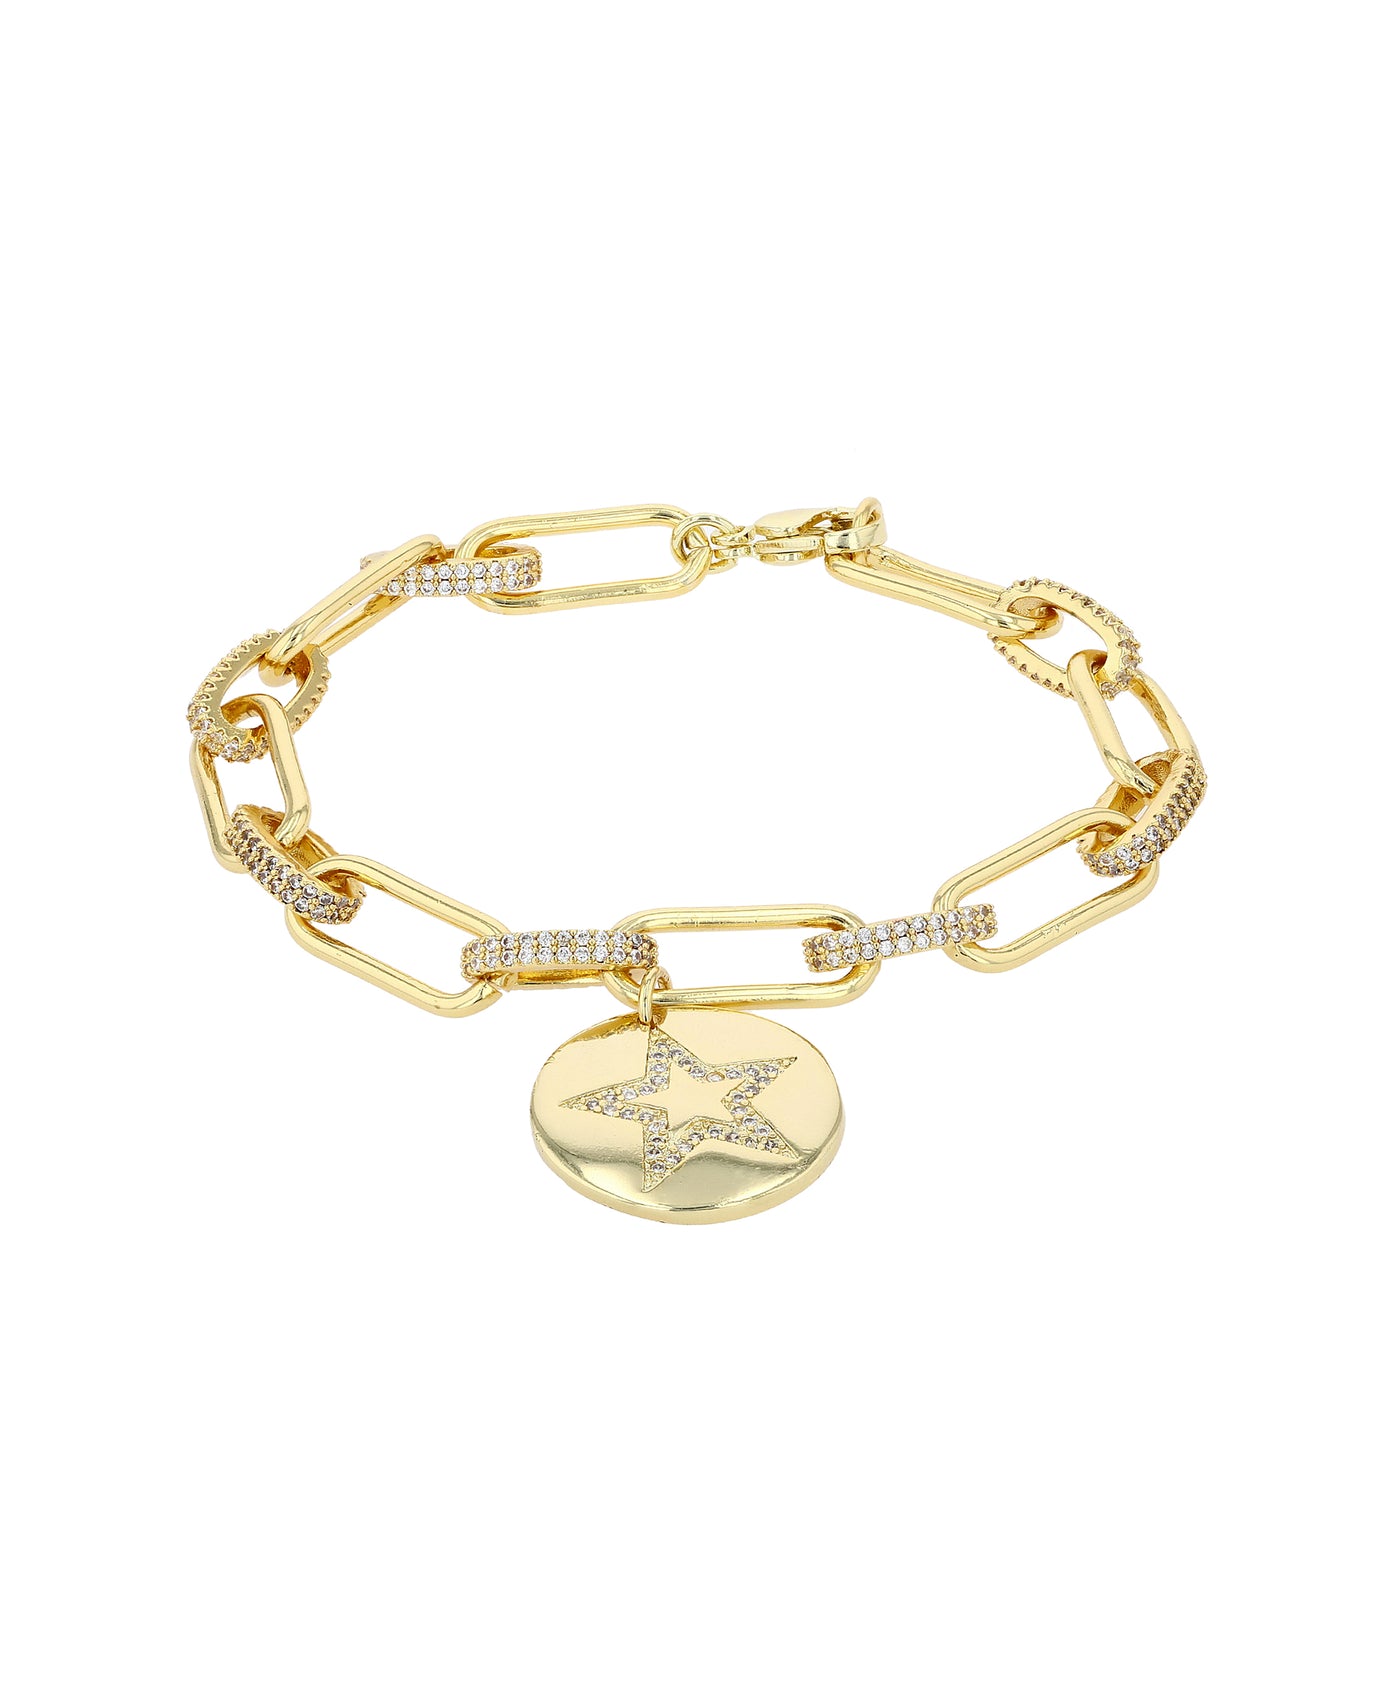 CZ Oval Chain Bracelet w/ CZ Star Charm image 1